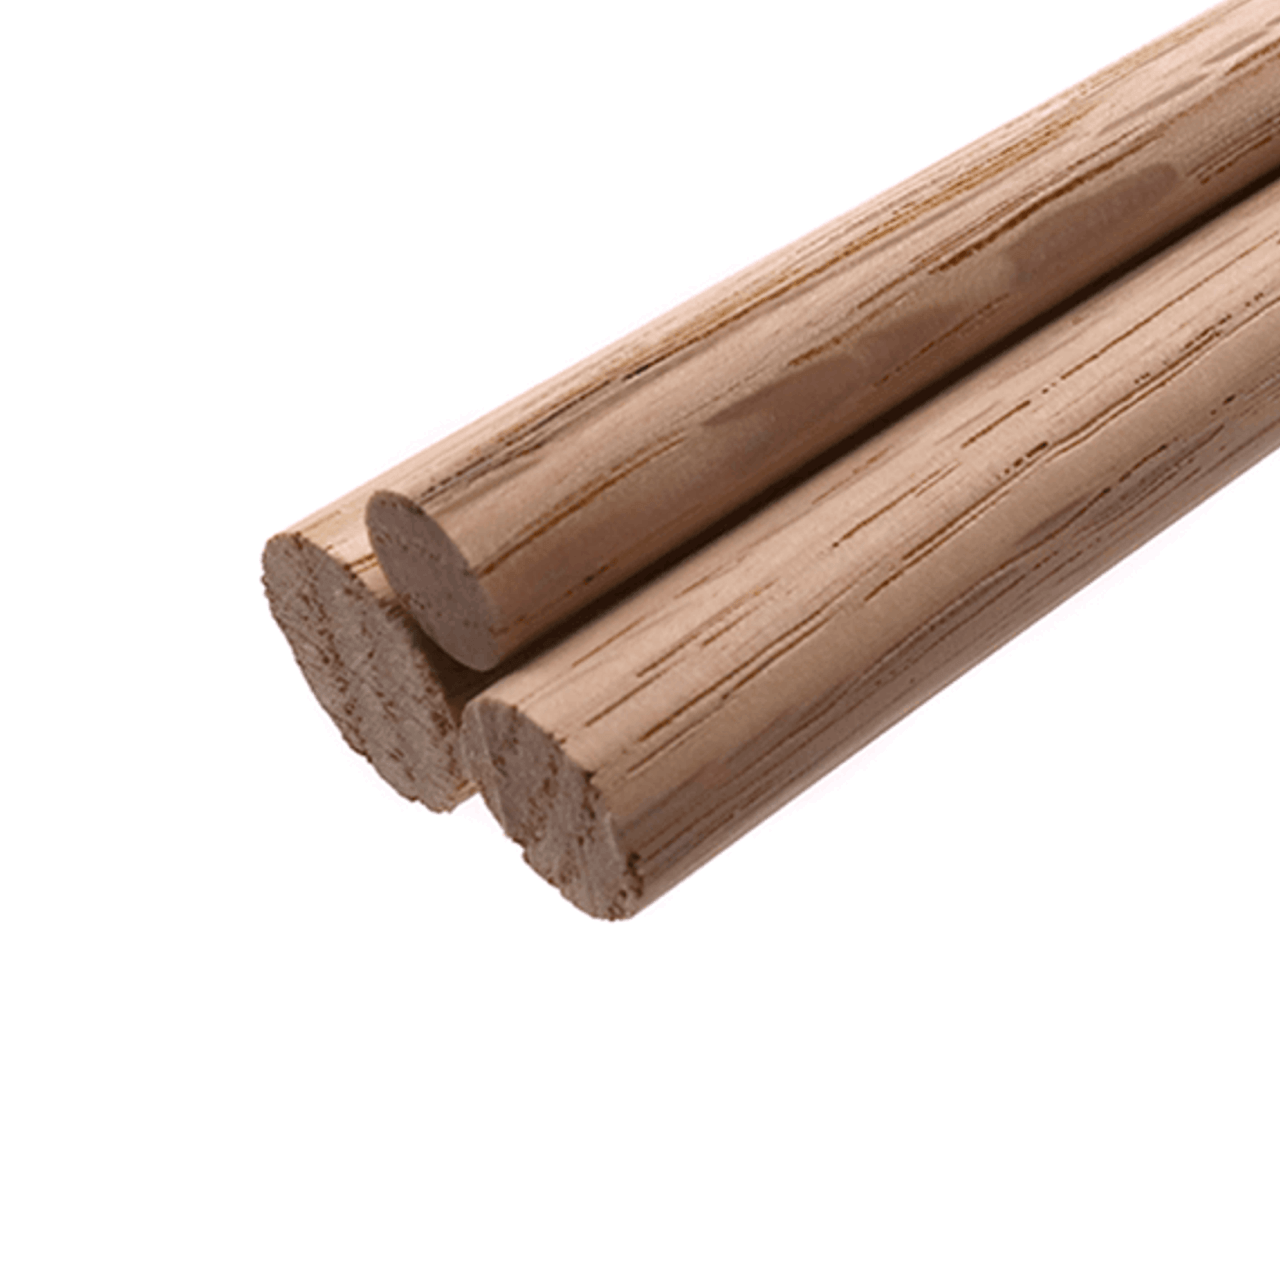 36 Inch Oak Dowel Rods